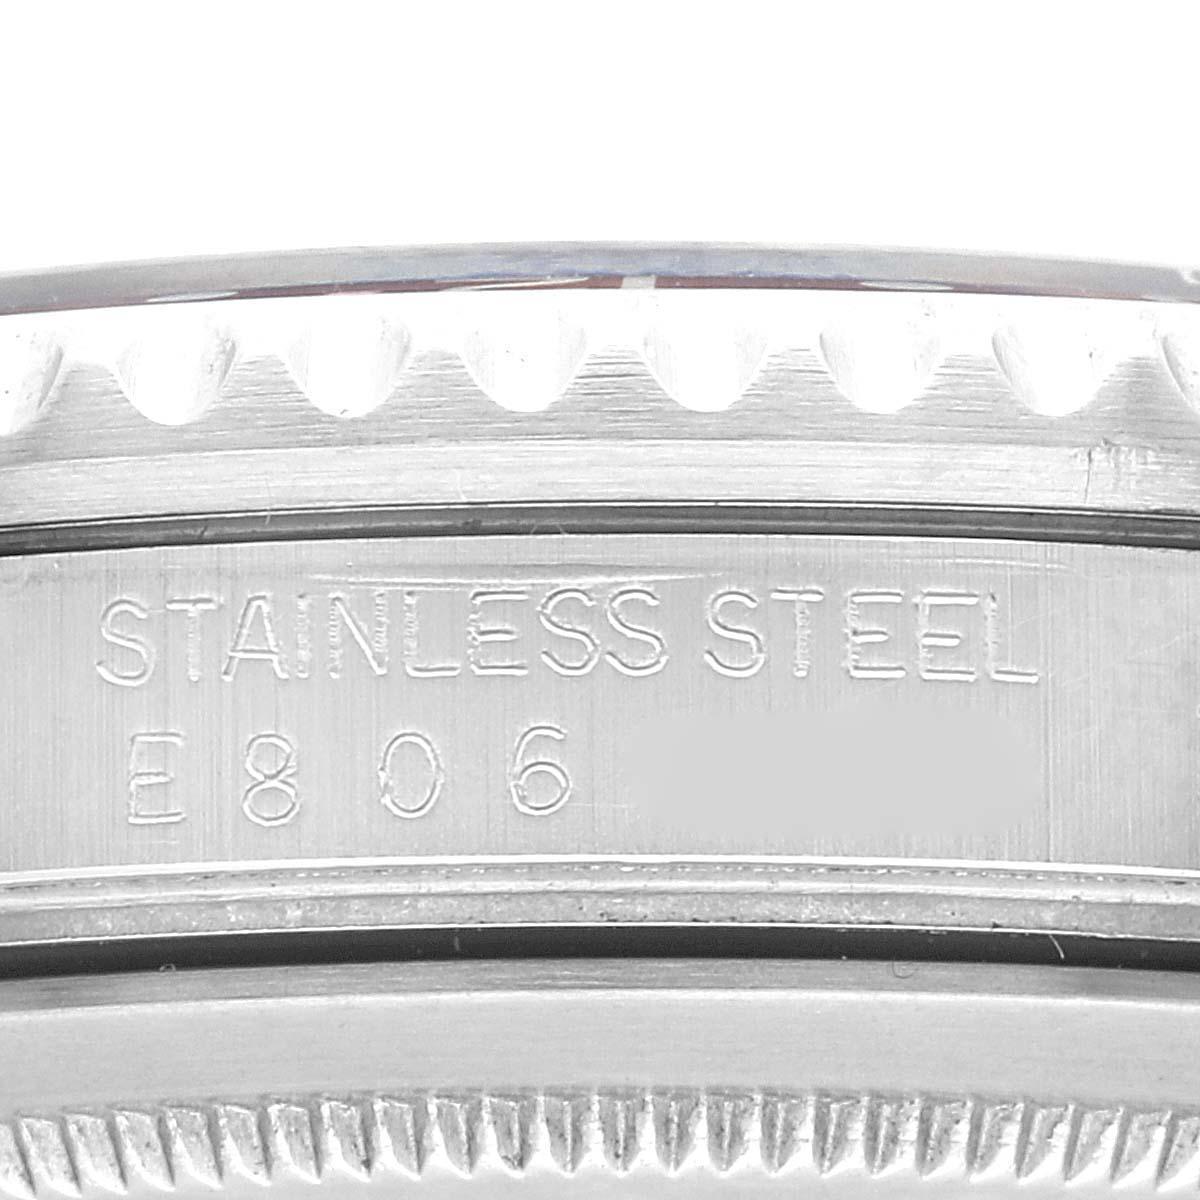 Rolex GMT Master 40mm Blue Red Pepsi Bezel Steel Mens Watch 16700. Mouvement automatique à remontage automatique, officiellement certifié chronomètre. Boîtier en acier inoxydable de 40 mm de diamètre. Logo Rolex sur la couronne. Lunette tournante